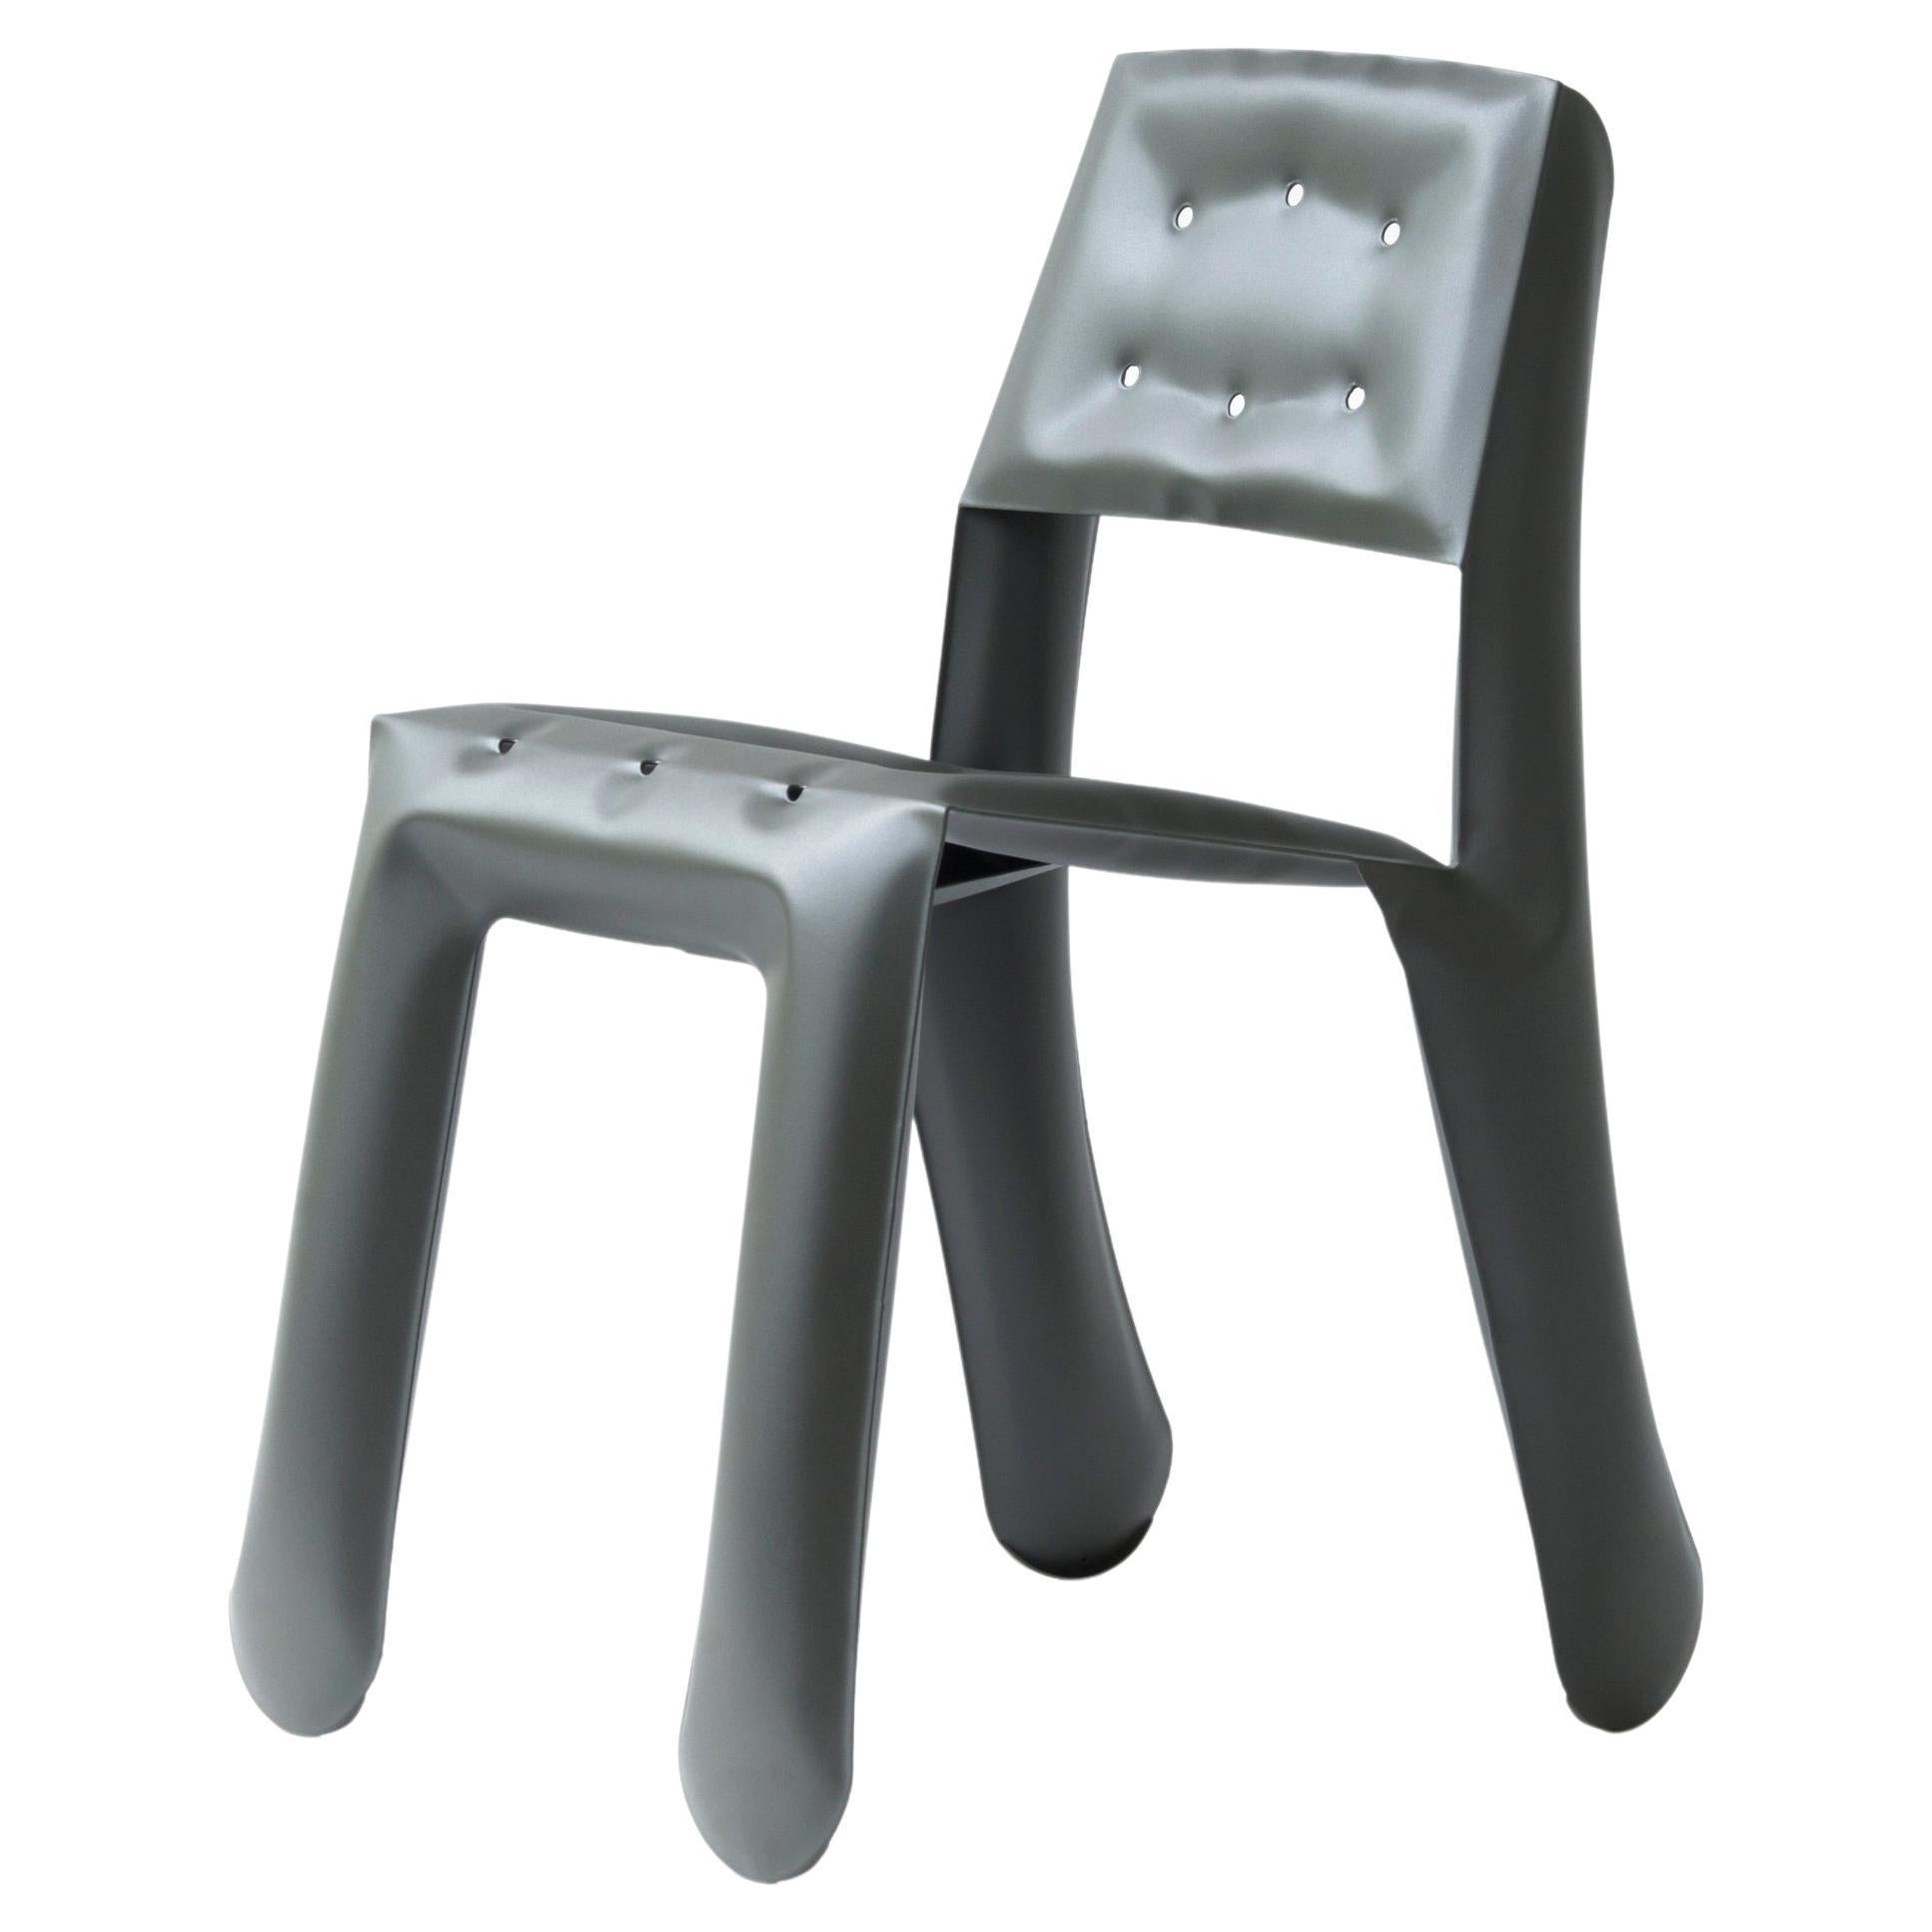 Umbra Grey Aluminum Chippensteel 0.5 Sculptural Chair by Zieta